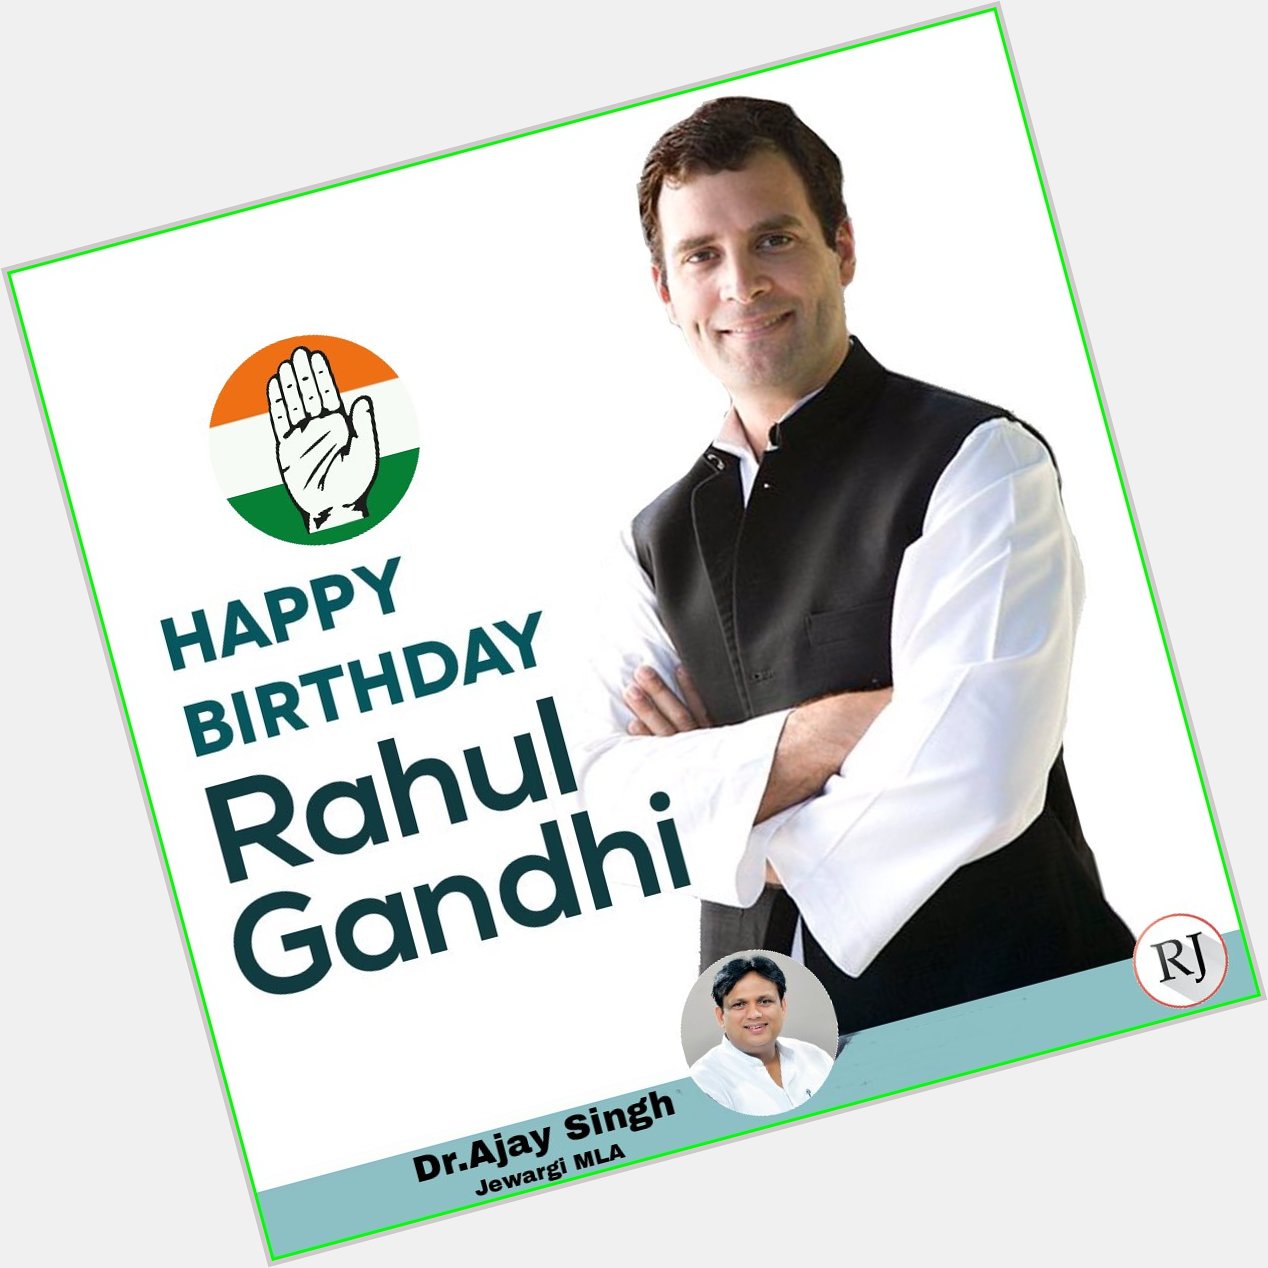   Happy Birthday Shri Rahul Gandhi hi    